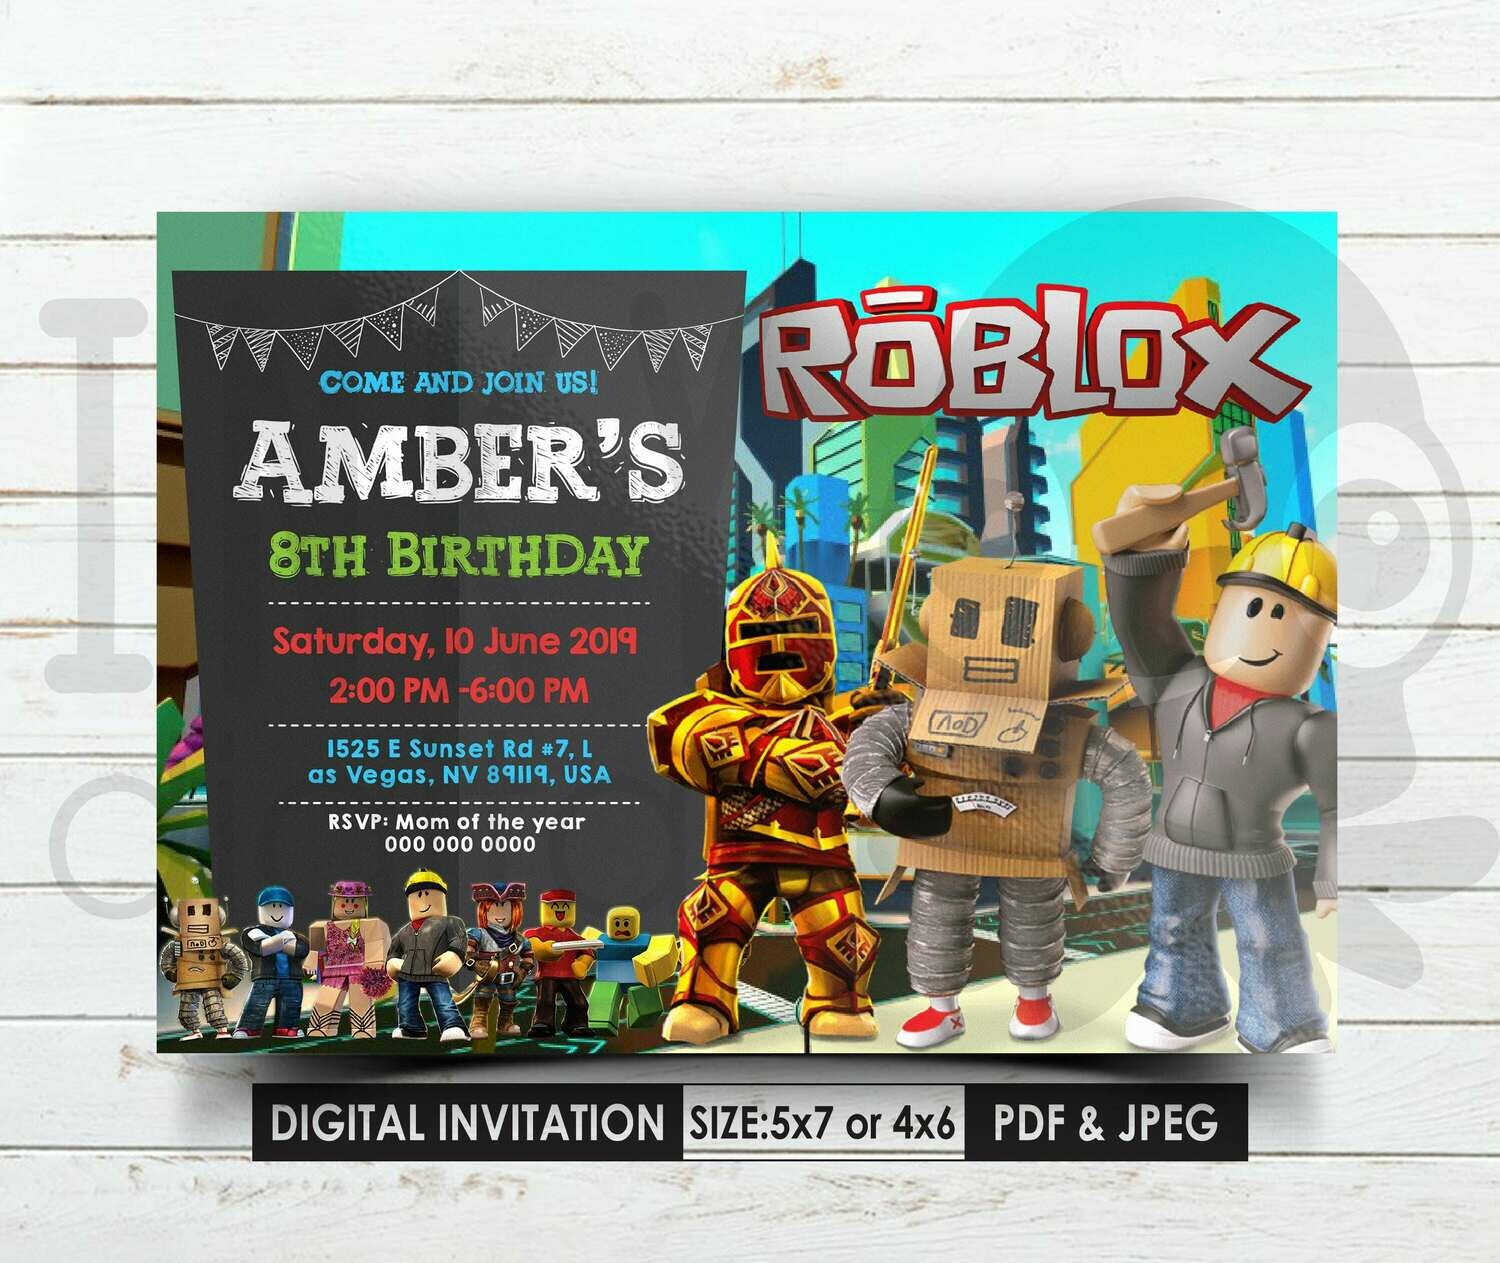 Roblox Invitations Roblox Invitation Roblox Birthday Roblox Birthday Party Roblox Theme - roblox birthday invitation roblox invite roblox party